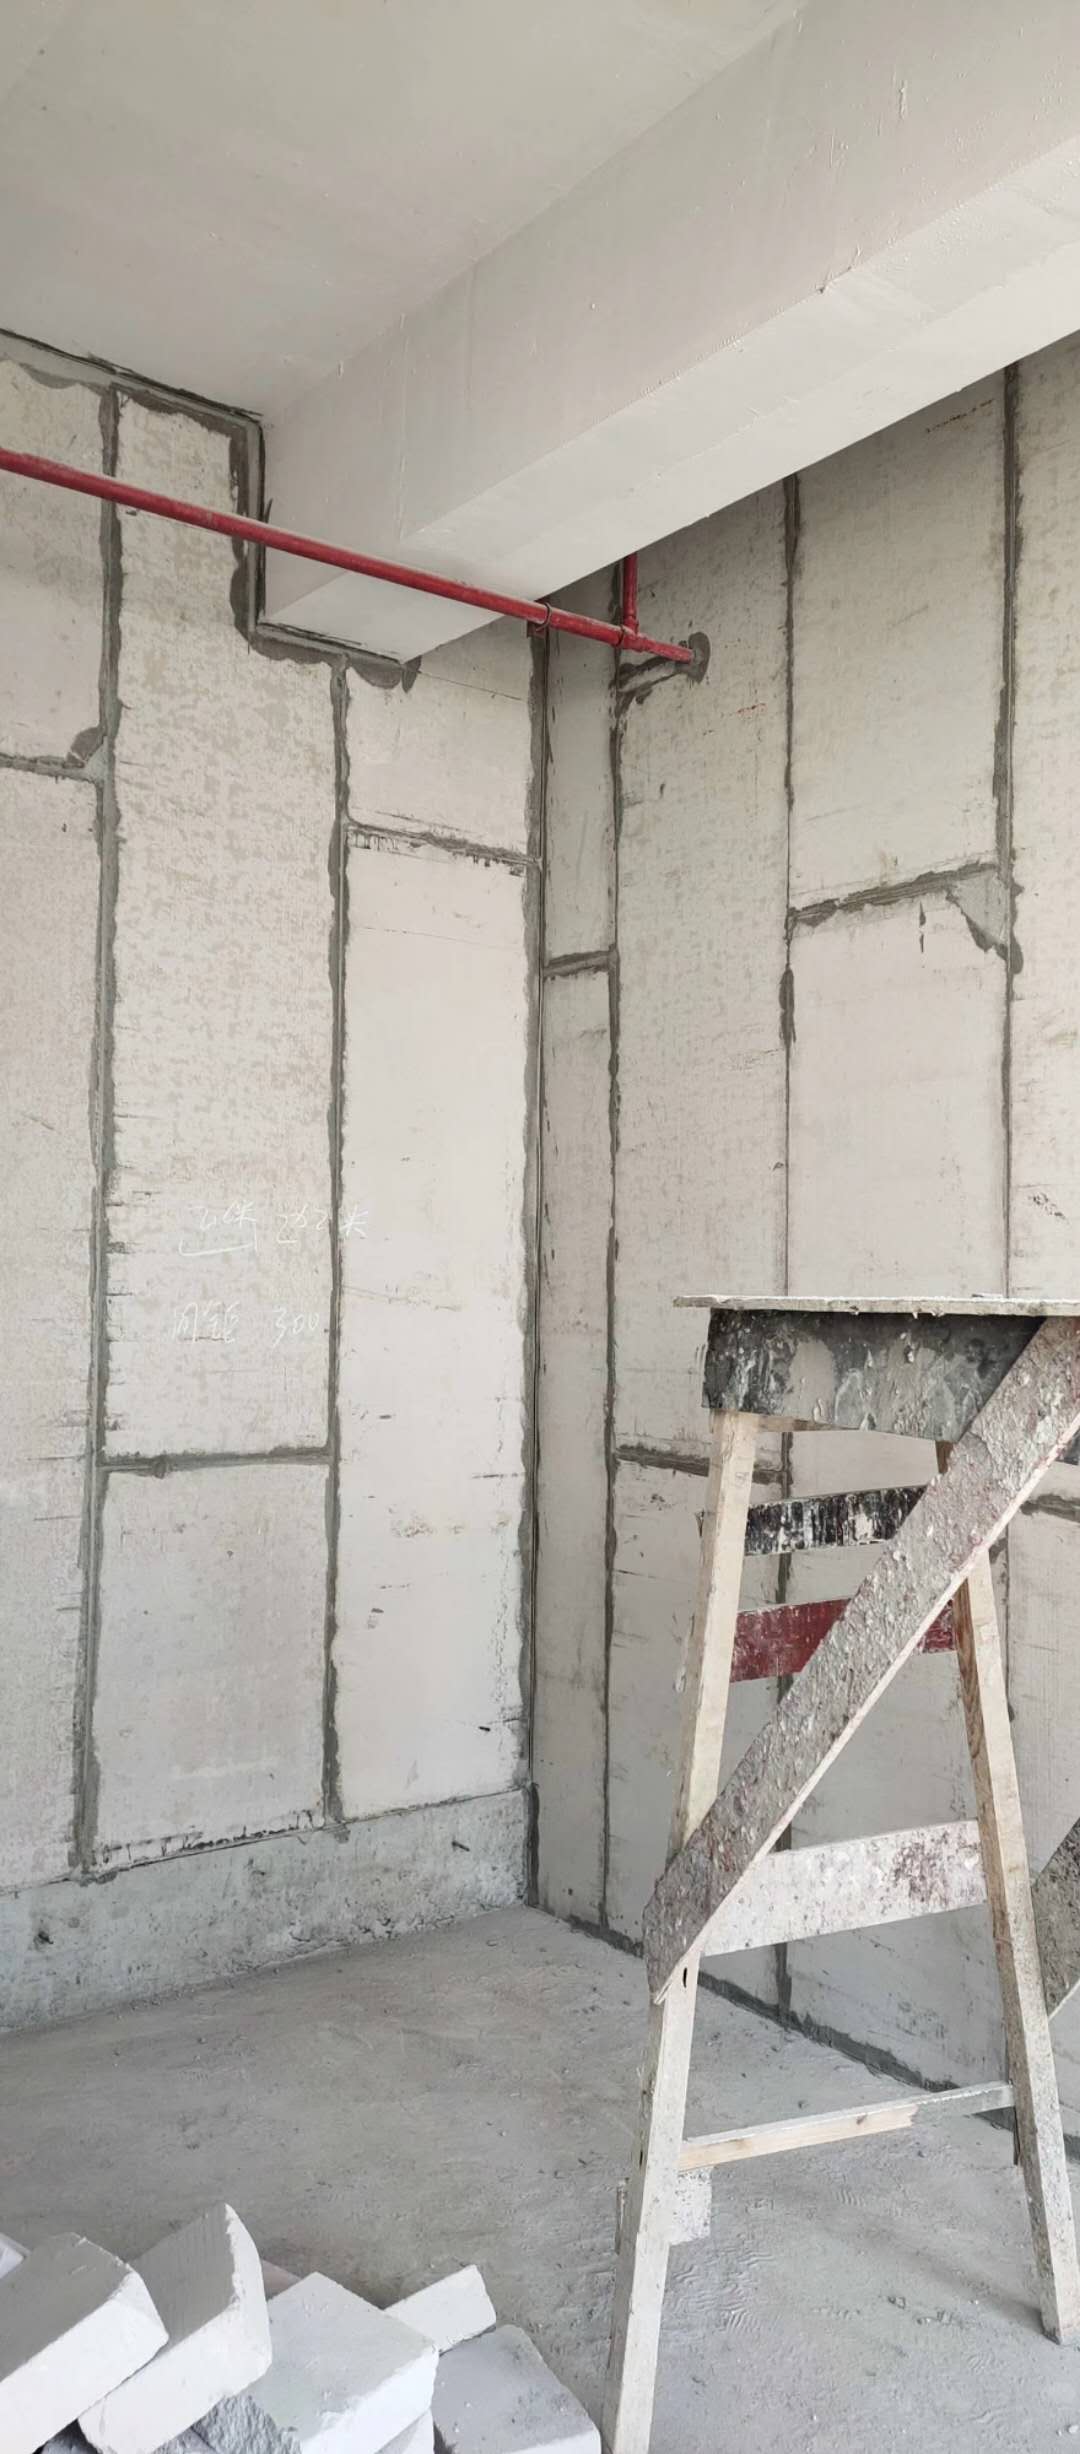 上海硅酸钙板上海硅酸钙板 江苏硅酸钙板 江苏轻质复合墙板 上海轻质复合墙板 安徽轻质复合墙板